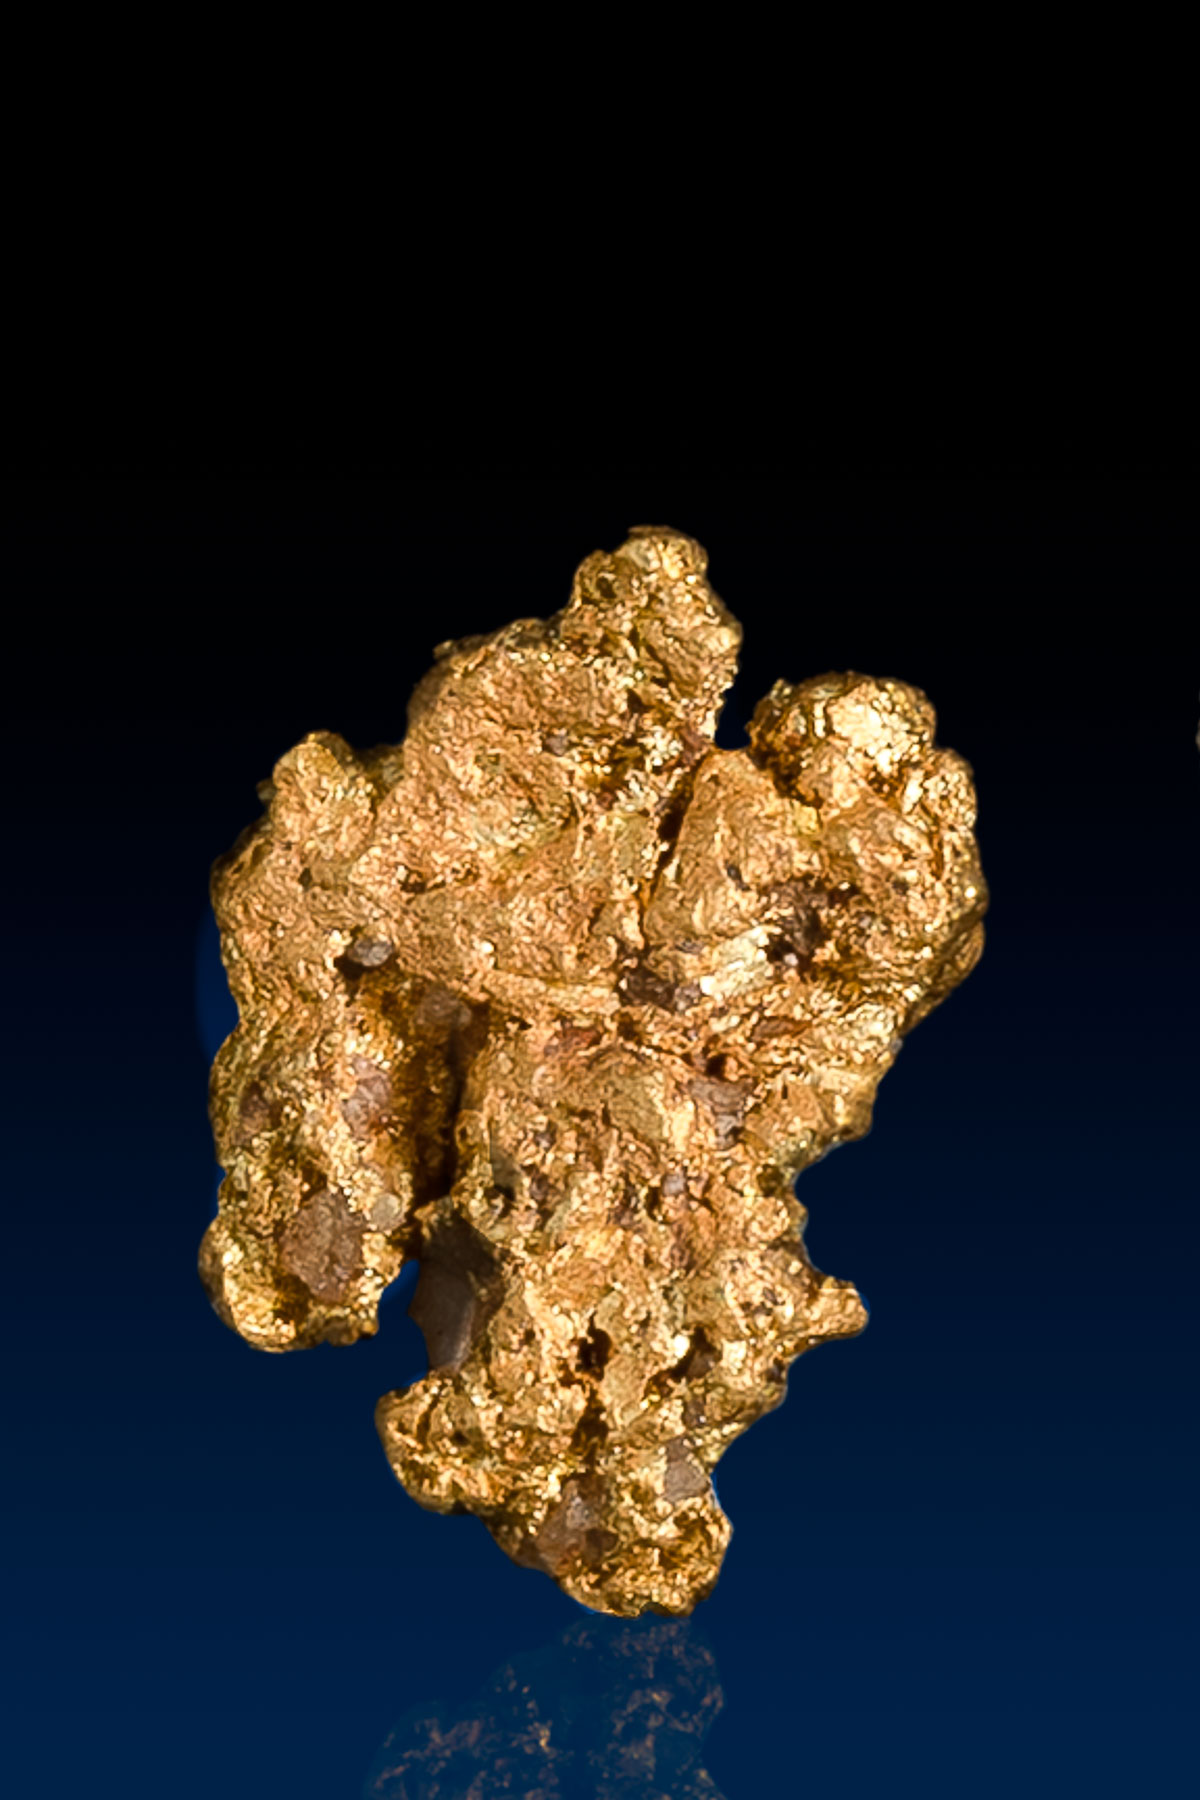 Interesting Shaped Natural Arizona Gold Nugget - 0.98 grams